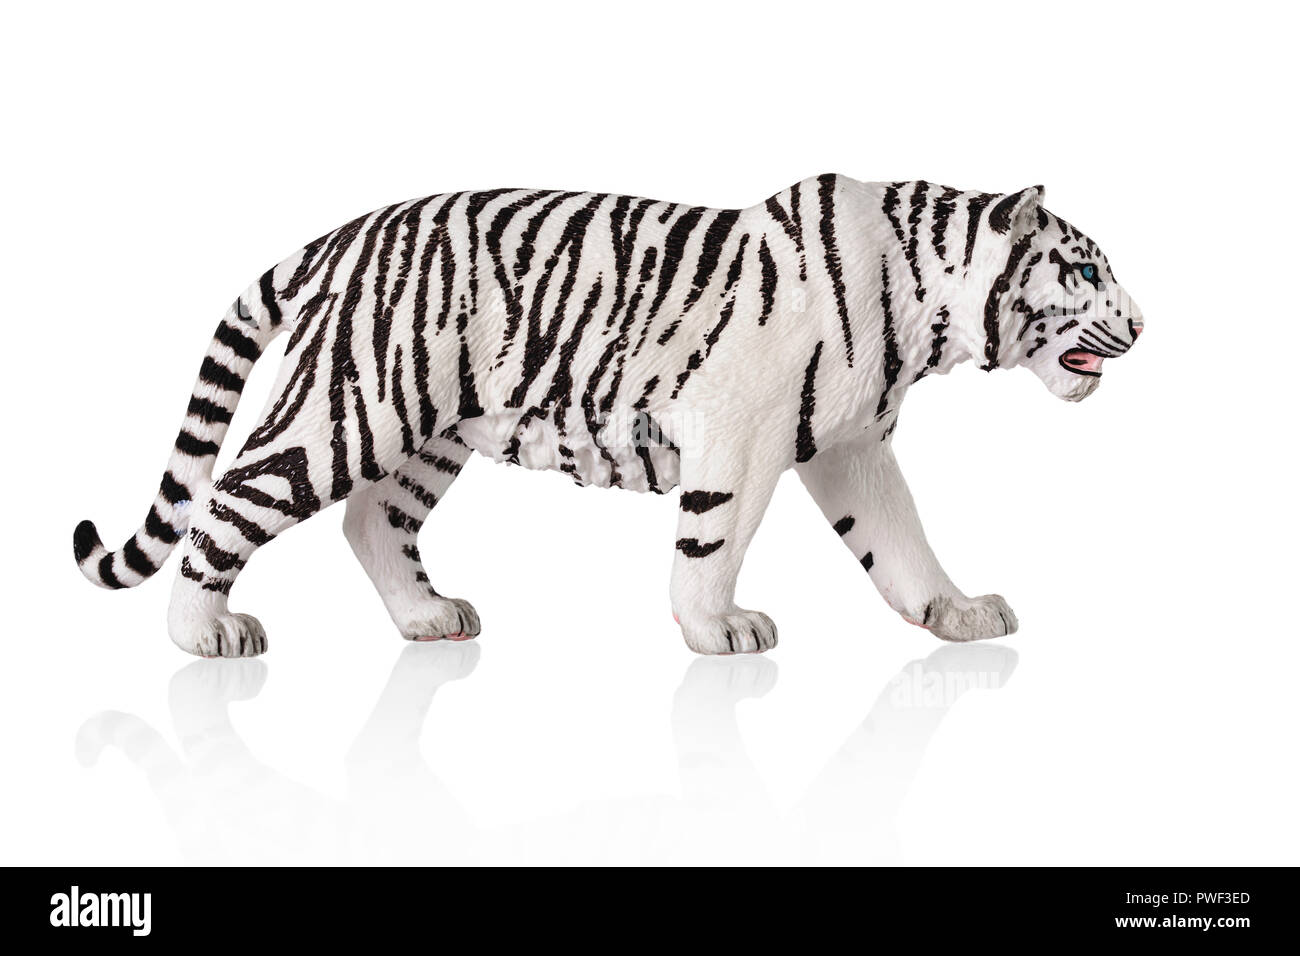 Tigre bianca del Bengala giocattolo. Isolato su sfondo bianco. Foto Stock